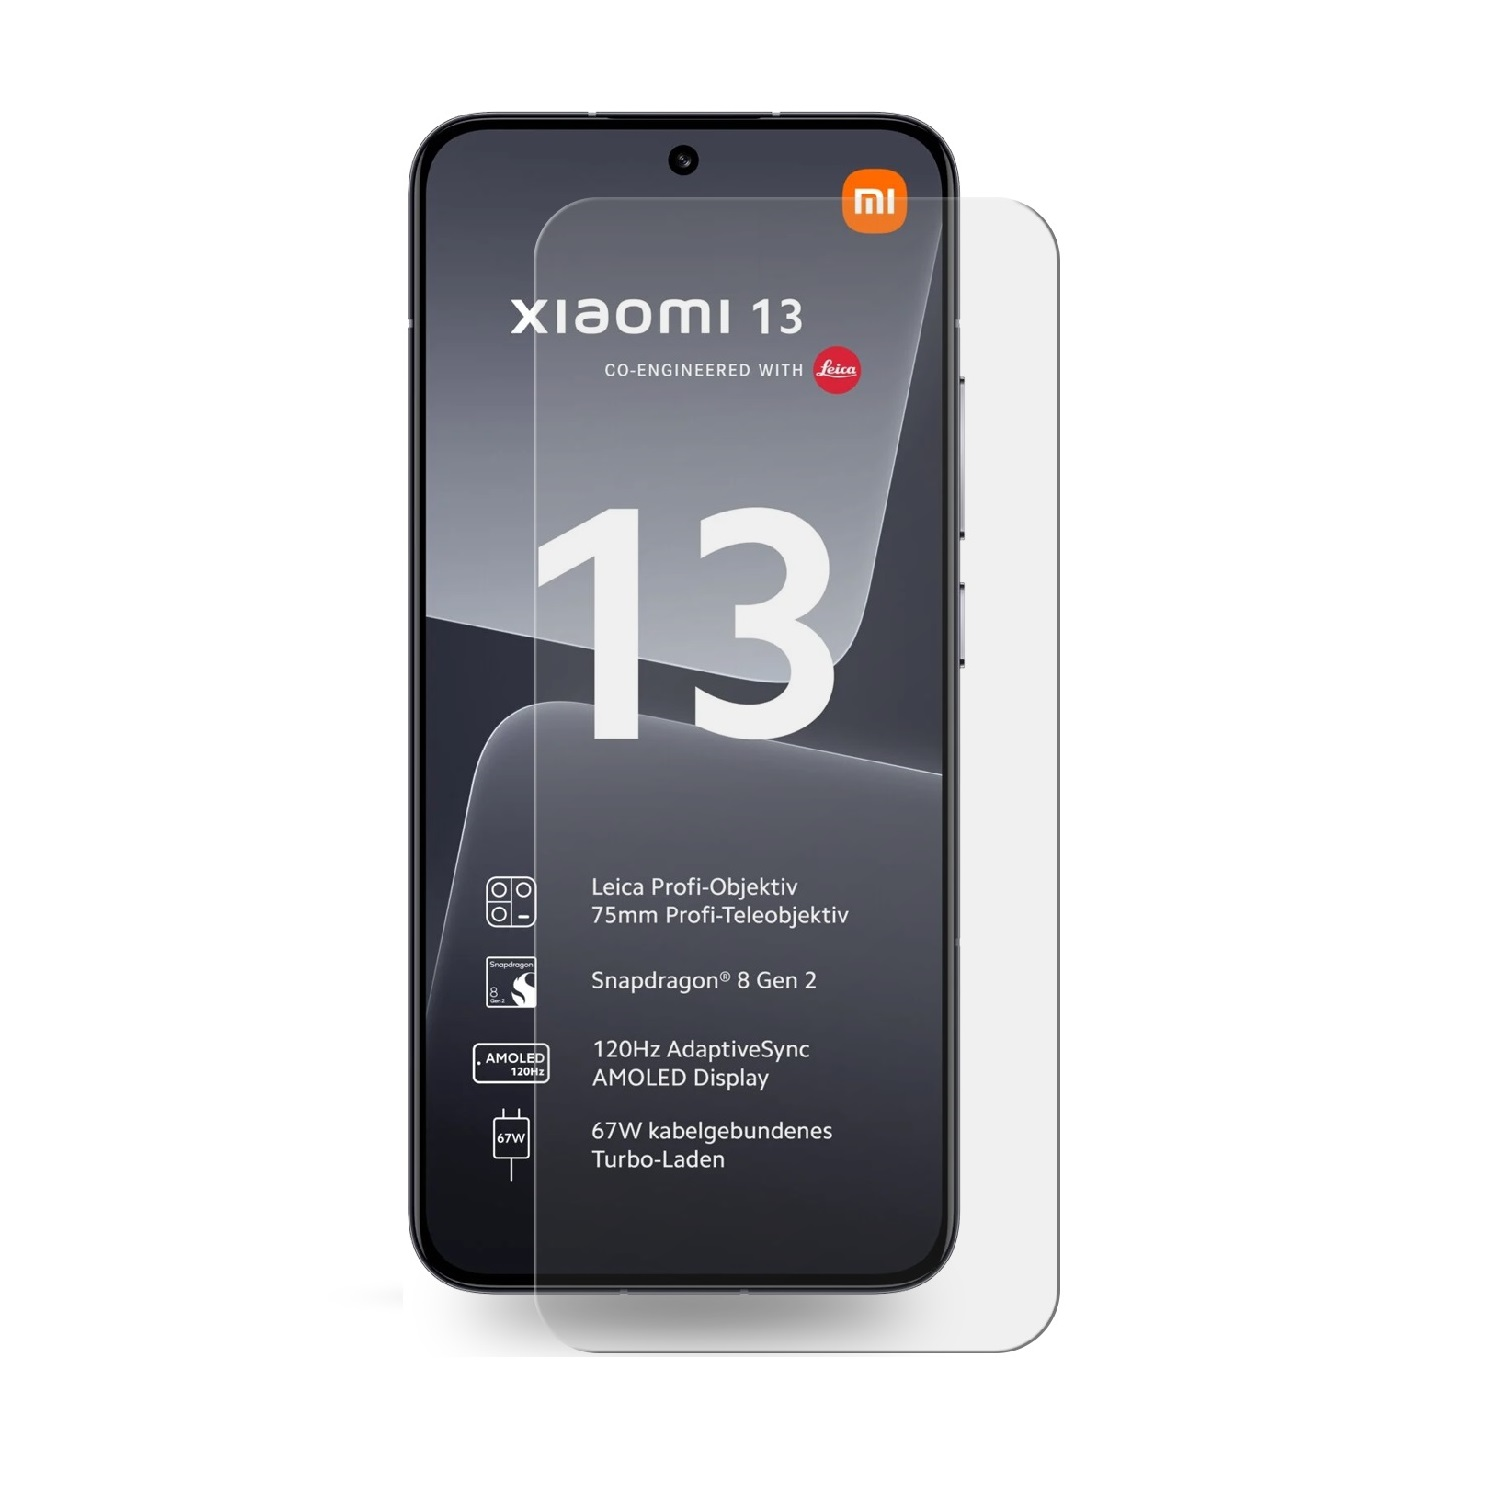 Panzerfolie ANTI-SHOCK Displayschutzfolie(für 13) HD Xiaomi 6x PROTECTORKING KLAR